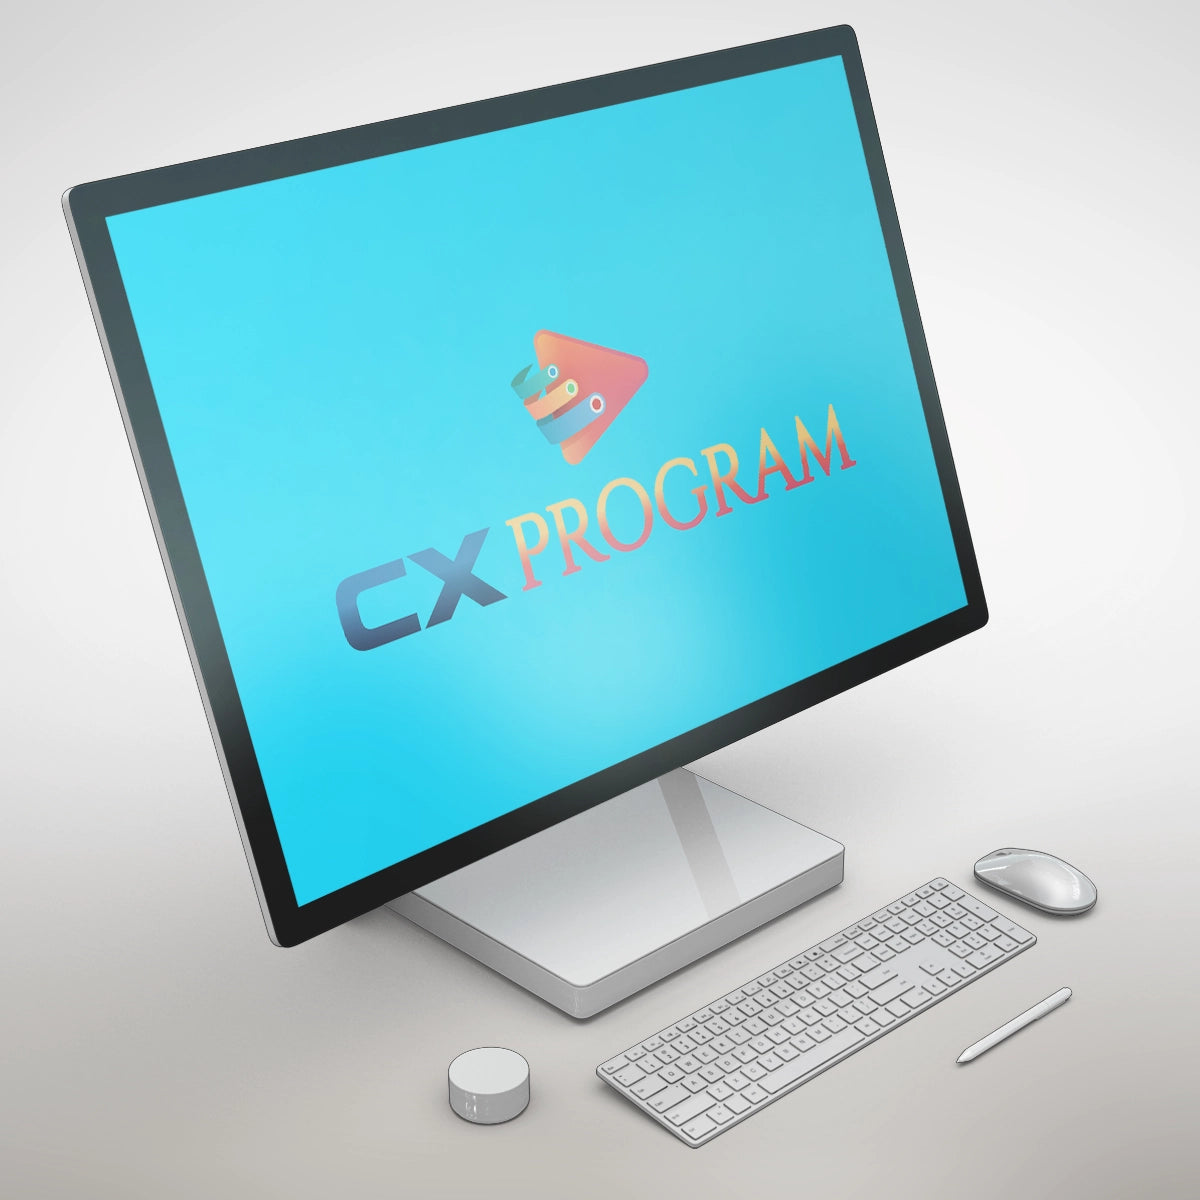 cxprogram.com